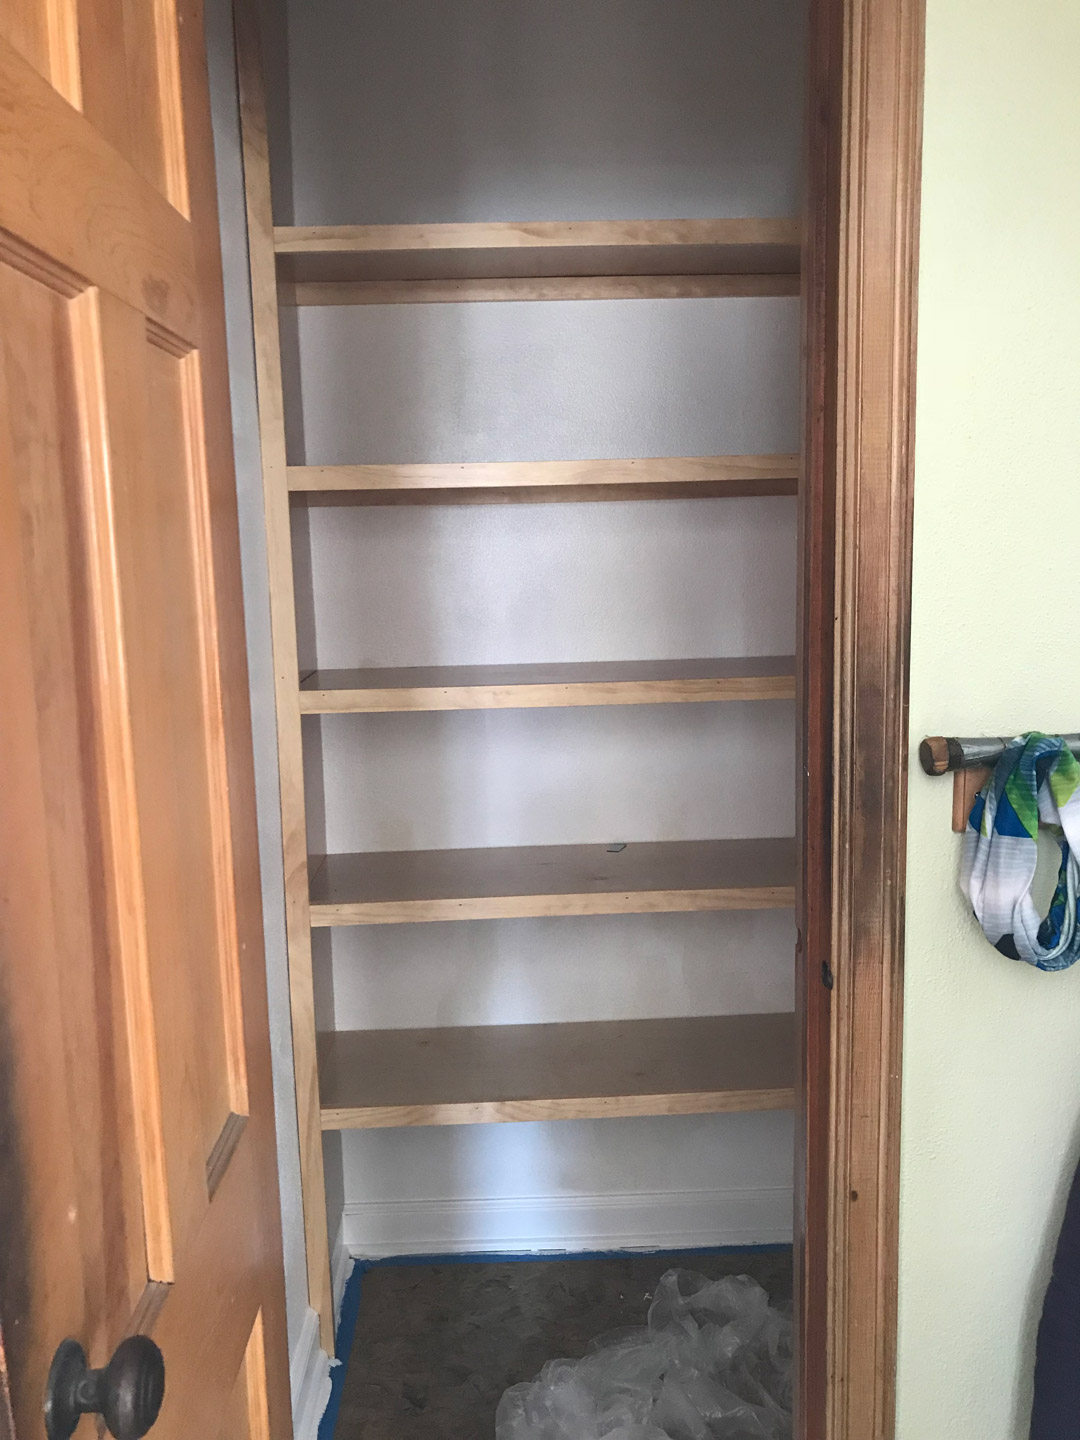 Pantry Shelves Built